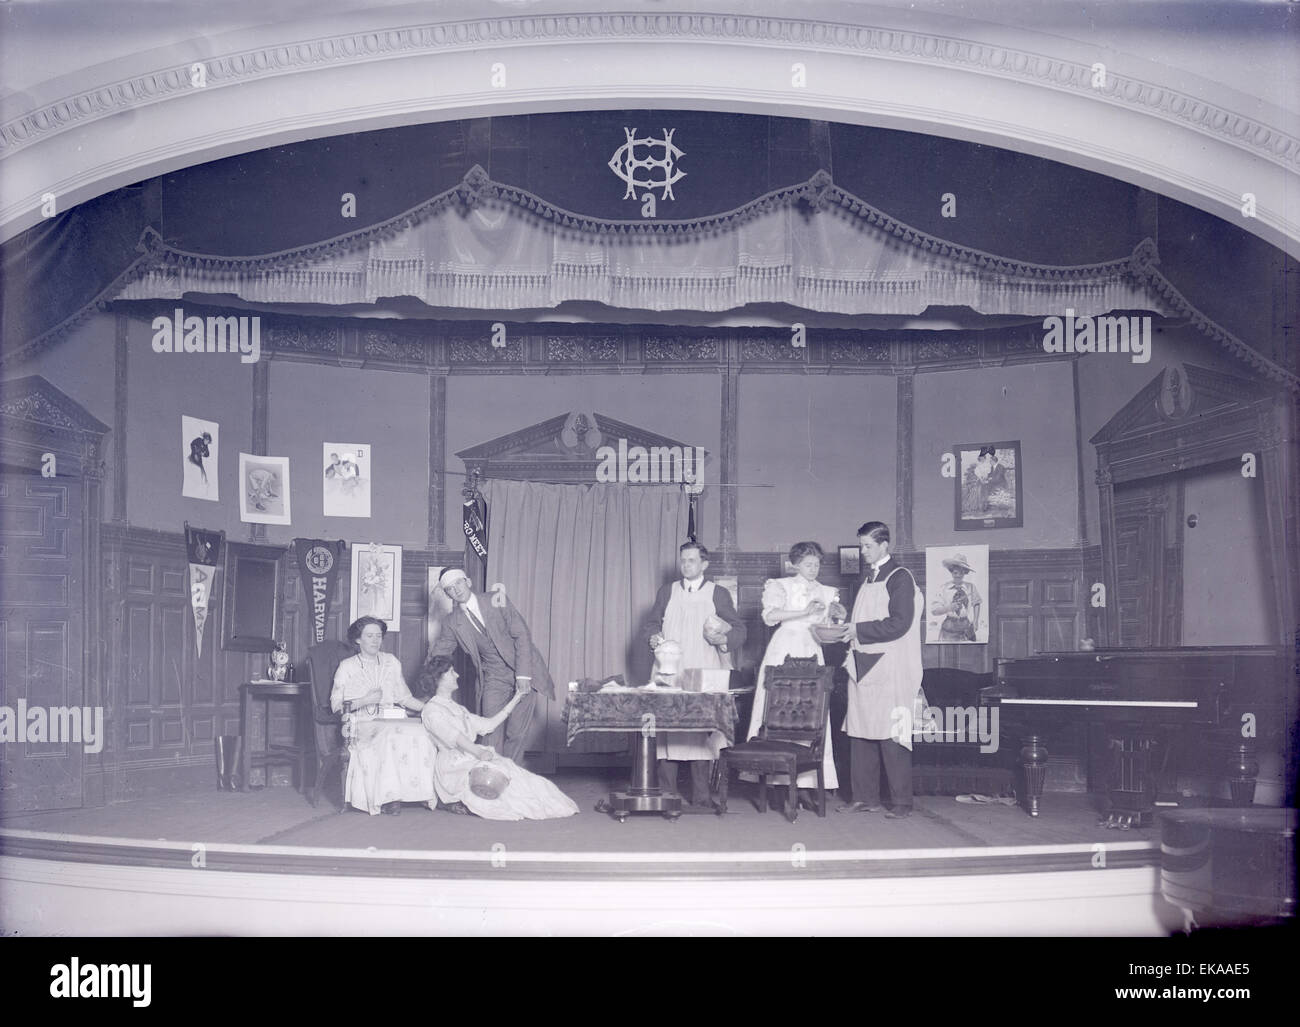 Antike 1900 Foto, Stiftskirche Theaterproduktion, wahrscheinlich Harvard College in Cambridge, Massachusetts, USA. QUELLE: ORIGINAL FOTONEGATIV. Stockfoto